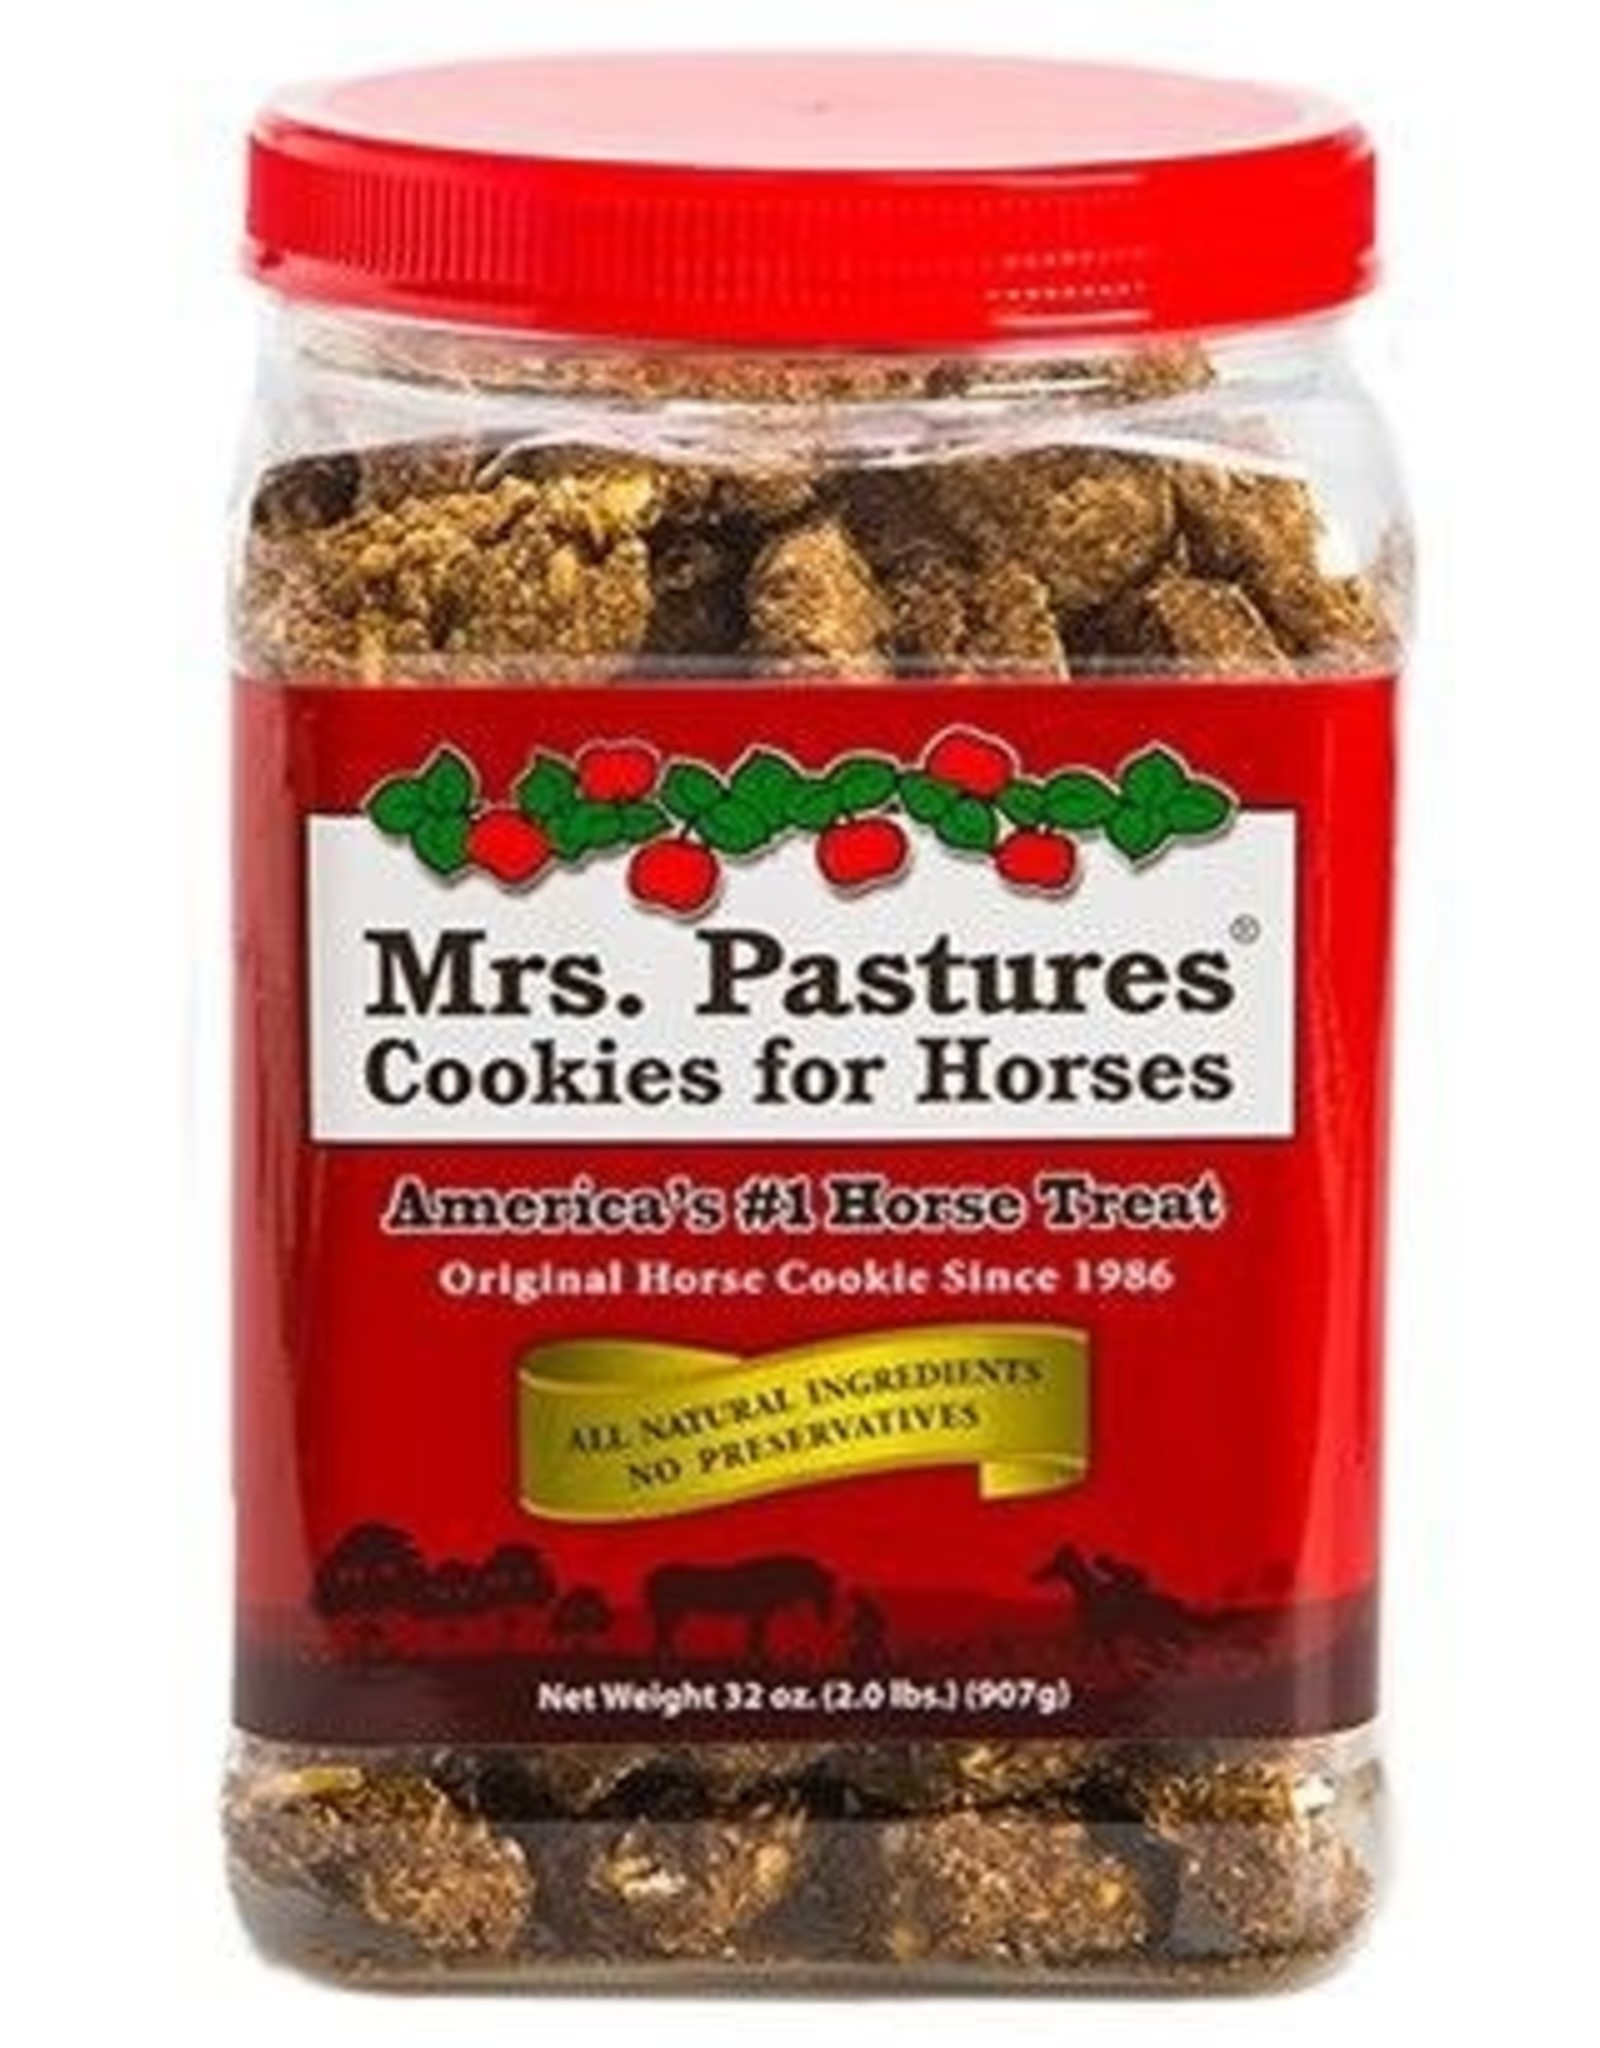 Mrs. Pastures Mrs. Pastures Cookies - 32oz